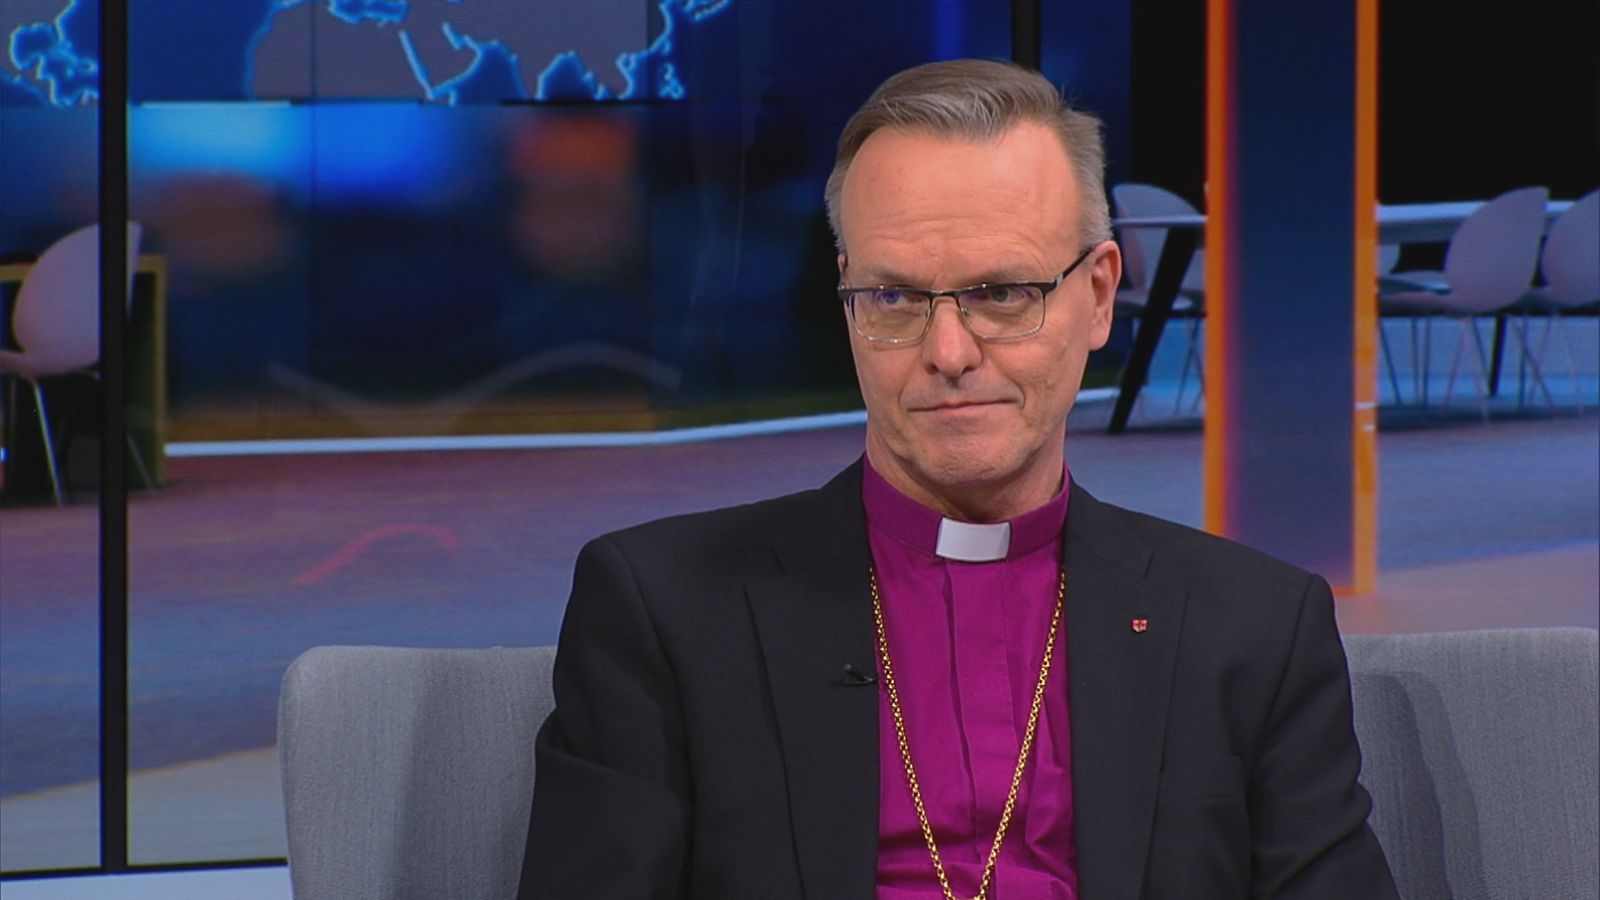 Arkkipiispa Tapio Luoma on päässyt sairaalasta, sairausloma jatkuu -  